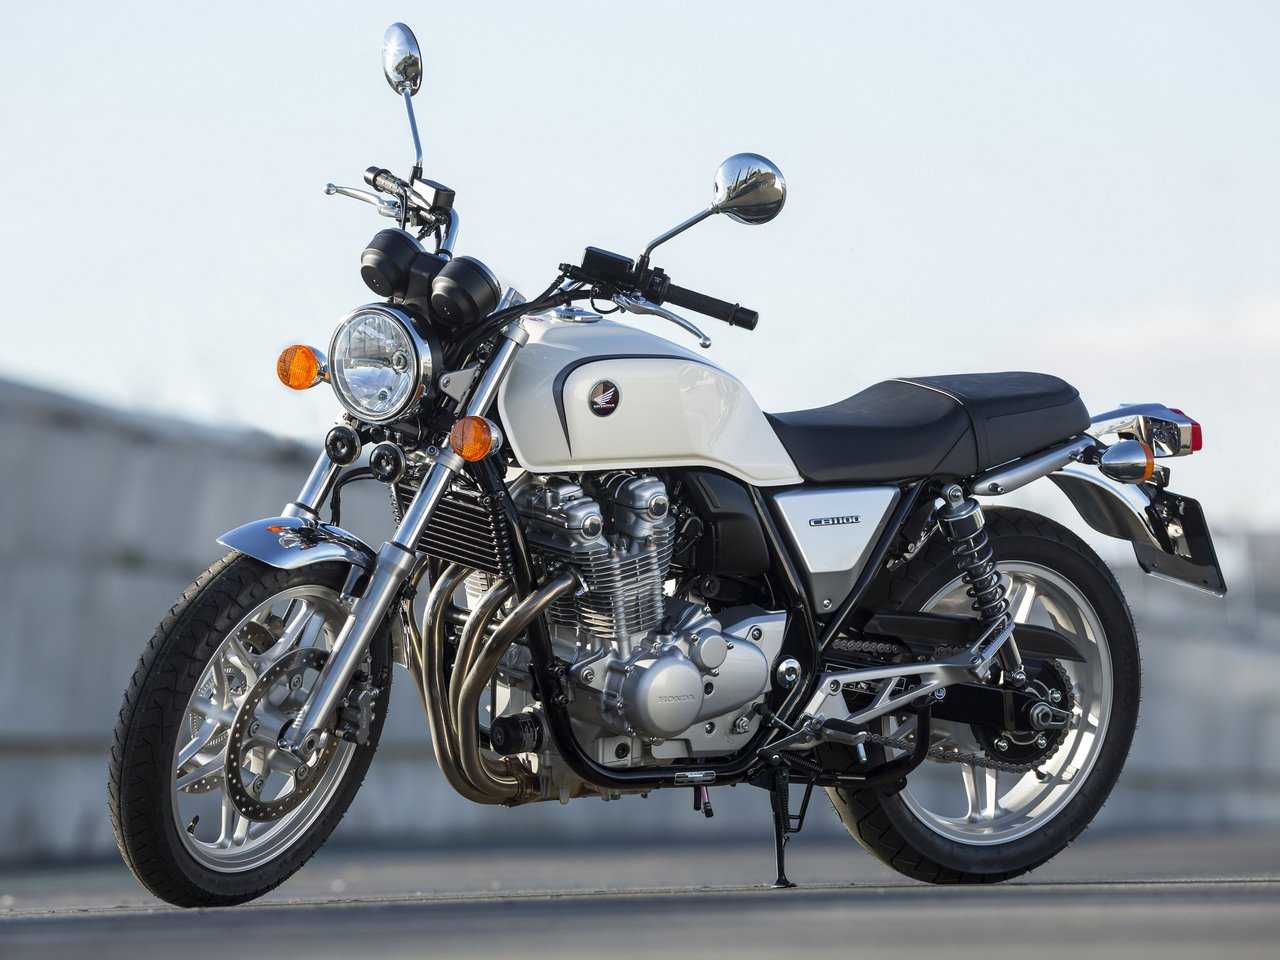 Представляем новый мотоцикл Yamaha XJR1300 в большой фотосессии Красивые фото, интересные ракурсы